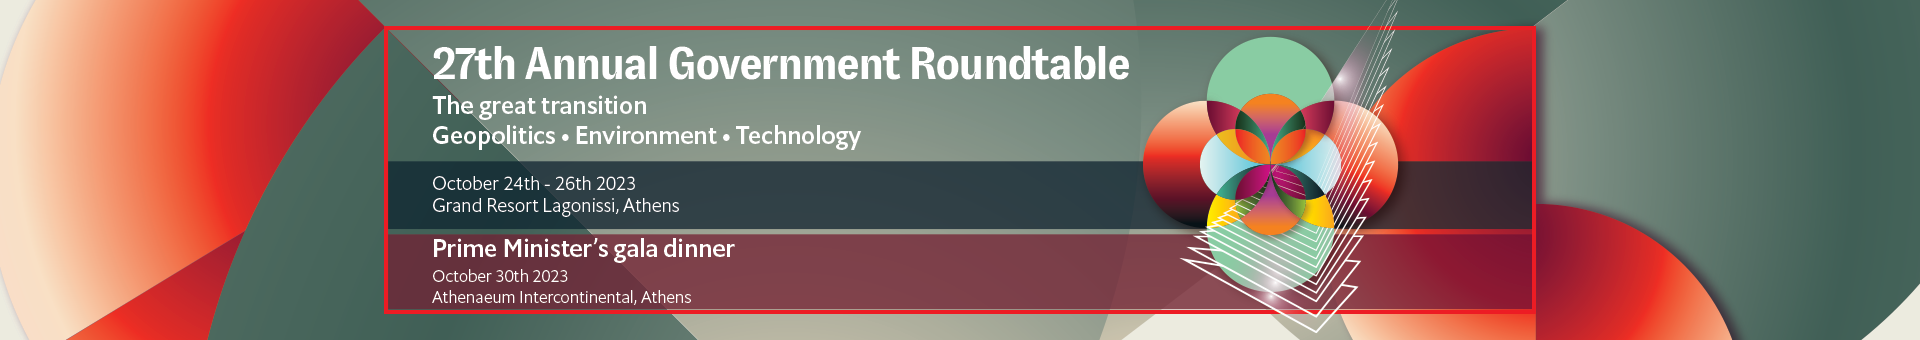 27η Συζήτηση Στρογγυλής Τραπέζης του Economist με την Ελληνική Κυβέρνηση                   Η μεγάλη μετάβαση: Γεωπολιτική – Περιβάλλον – Τεχνολογία